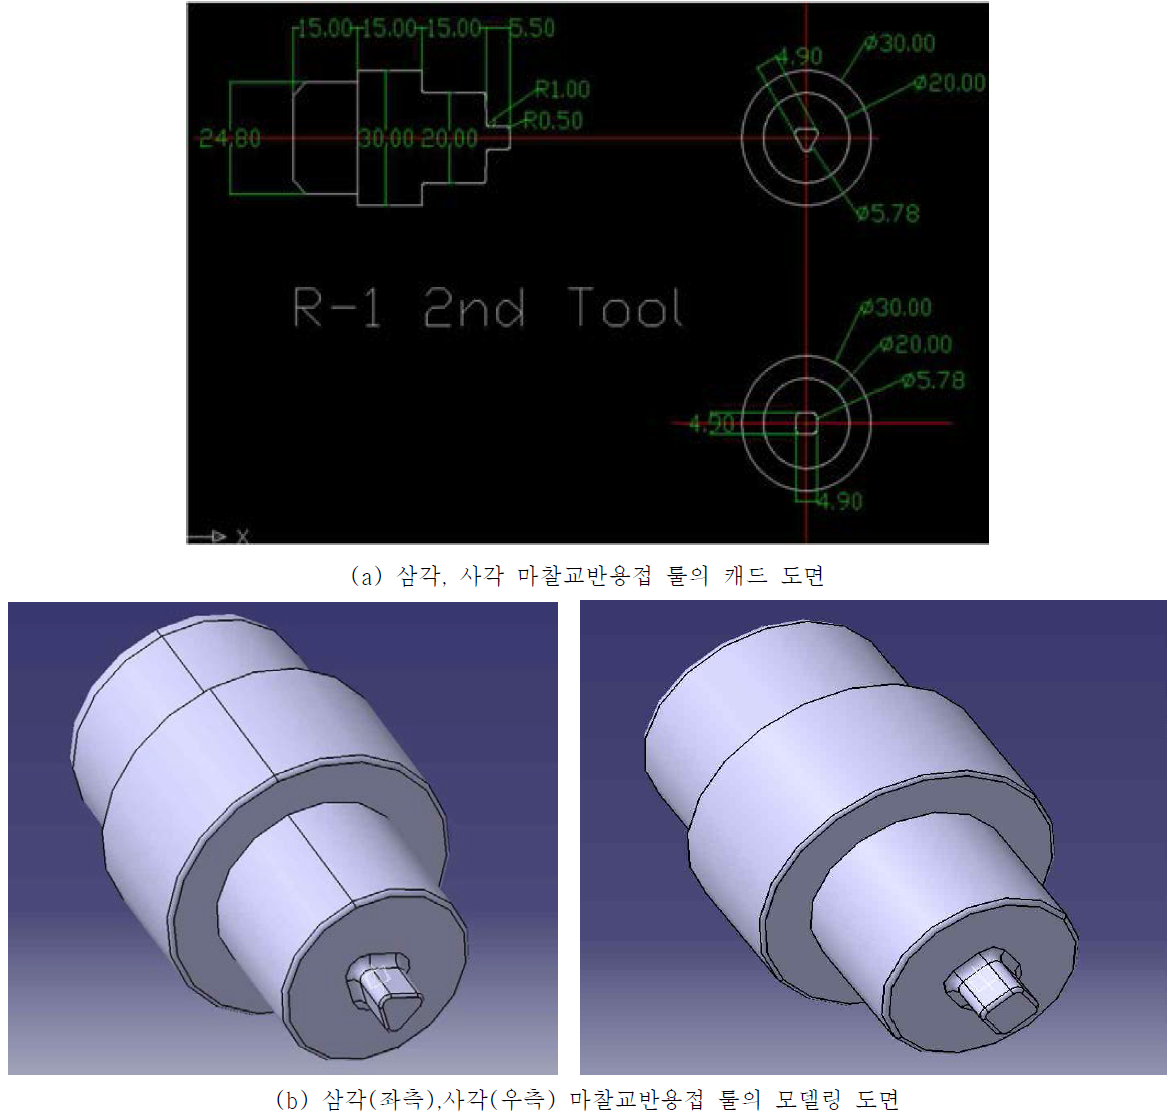 2차 삼각, 사각 마찰교반용접 툴의 설계